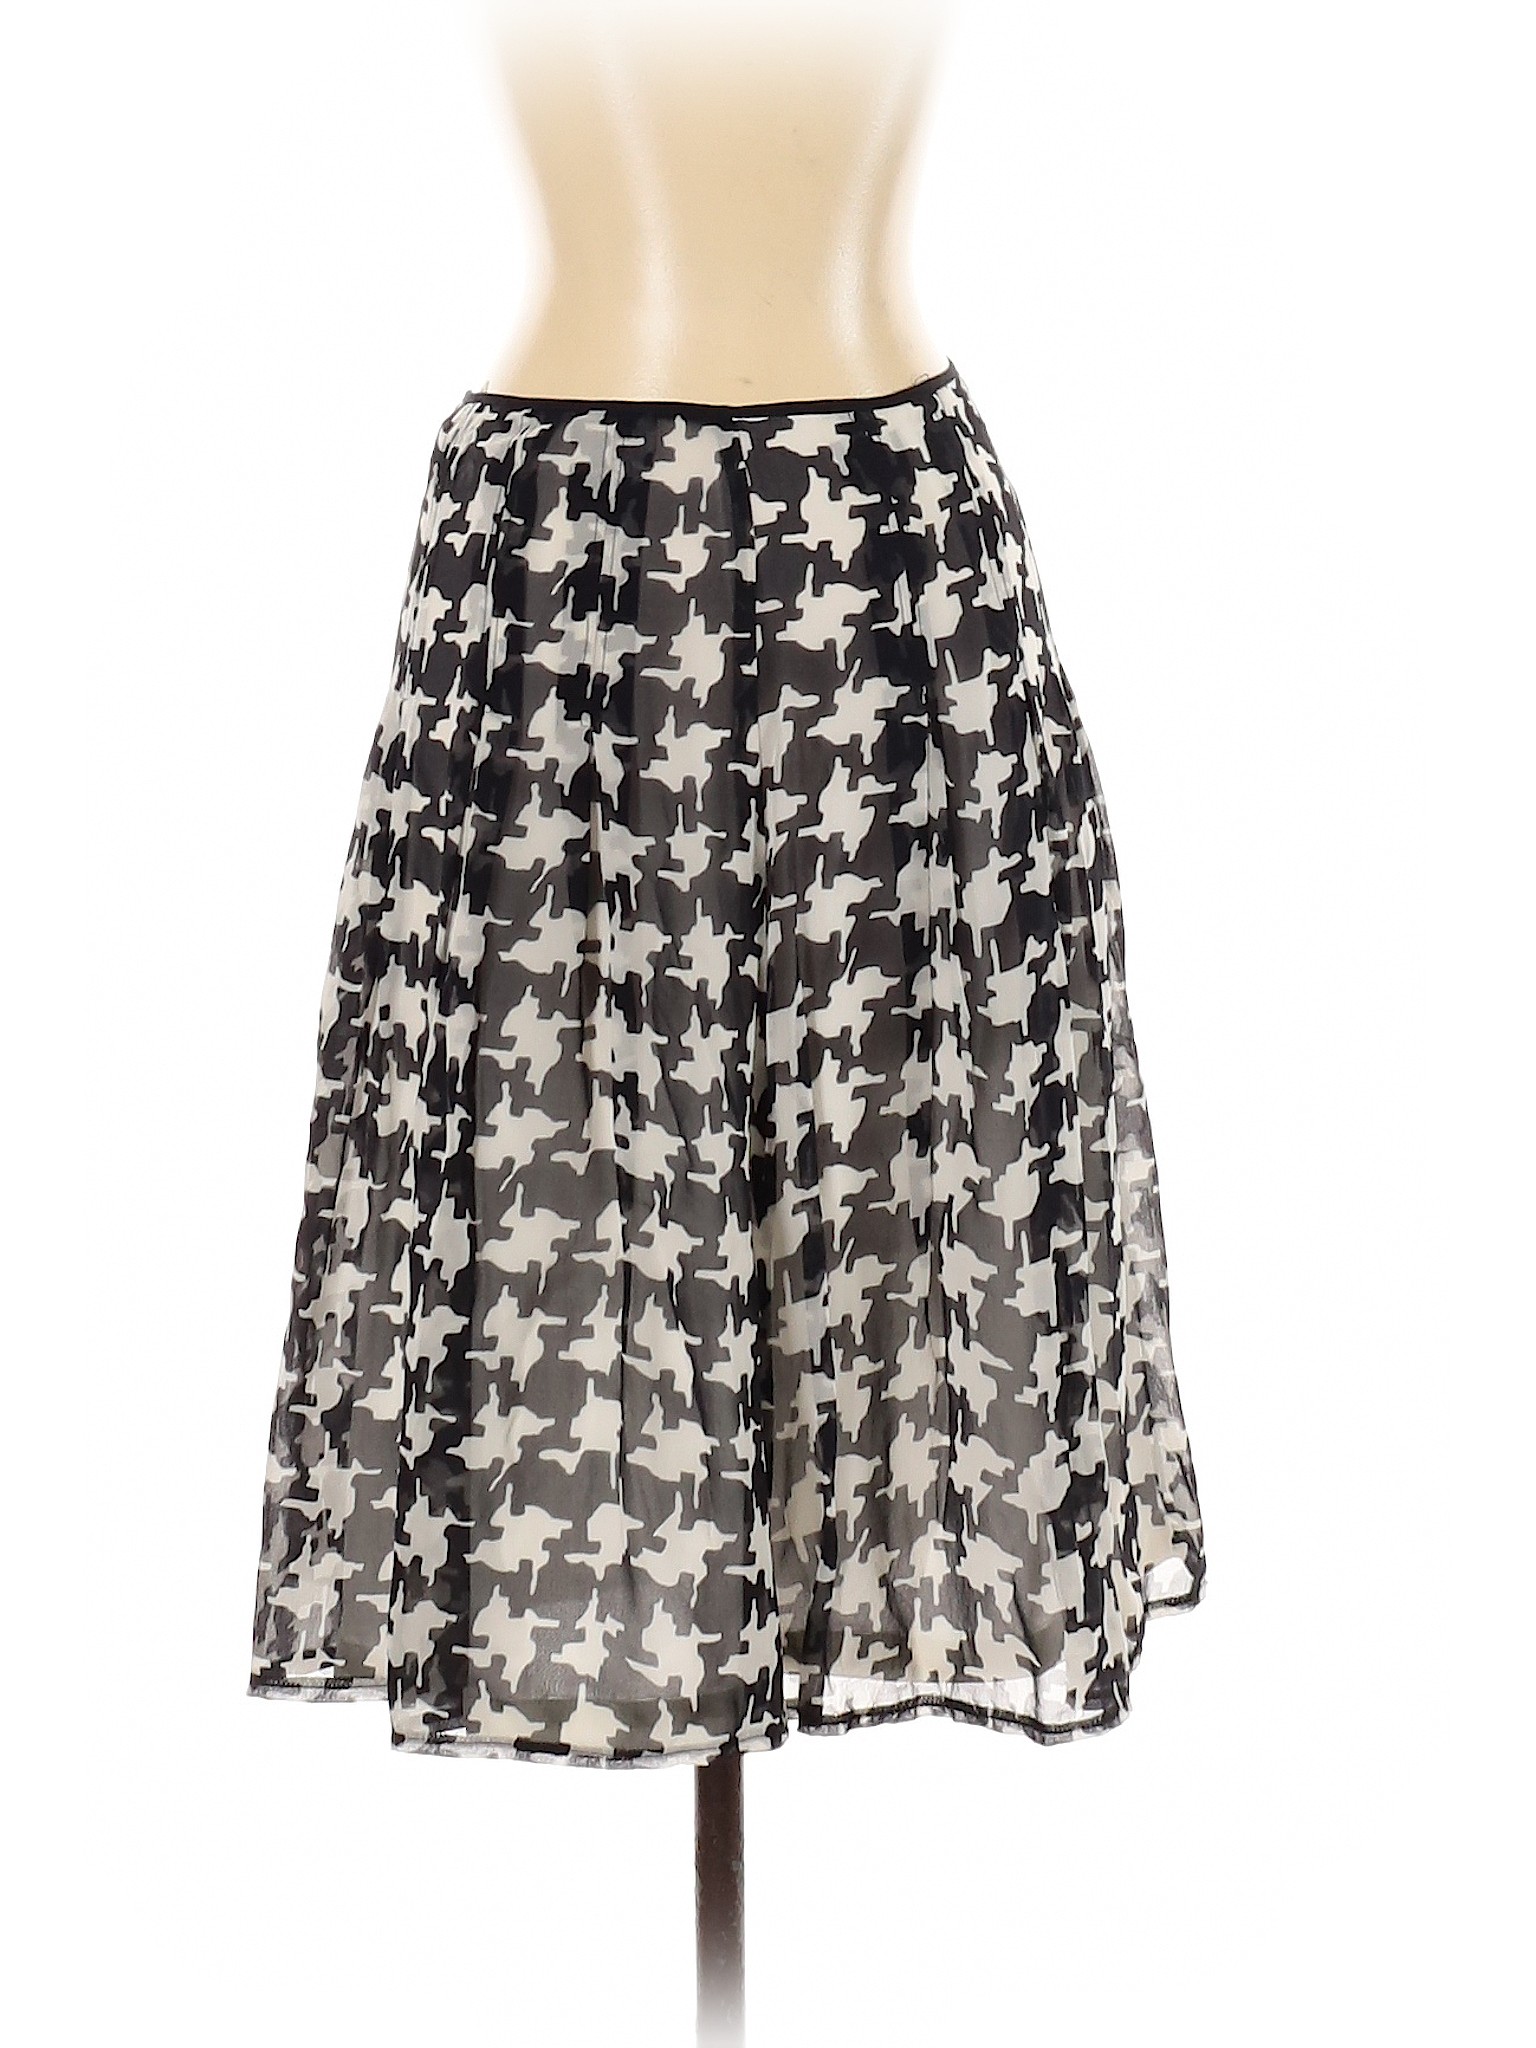 Lapis Women Black Silk Skirt P | eBay